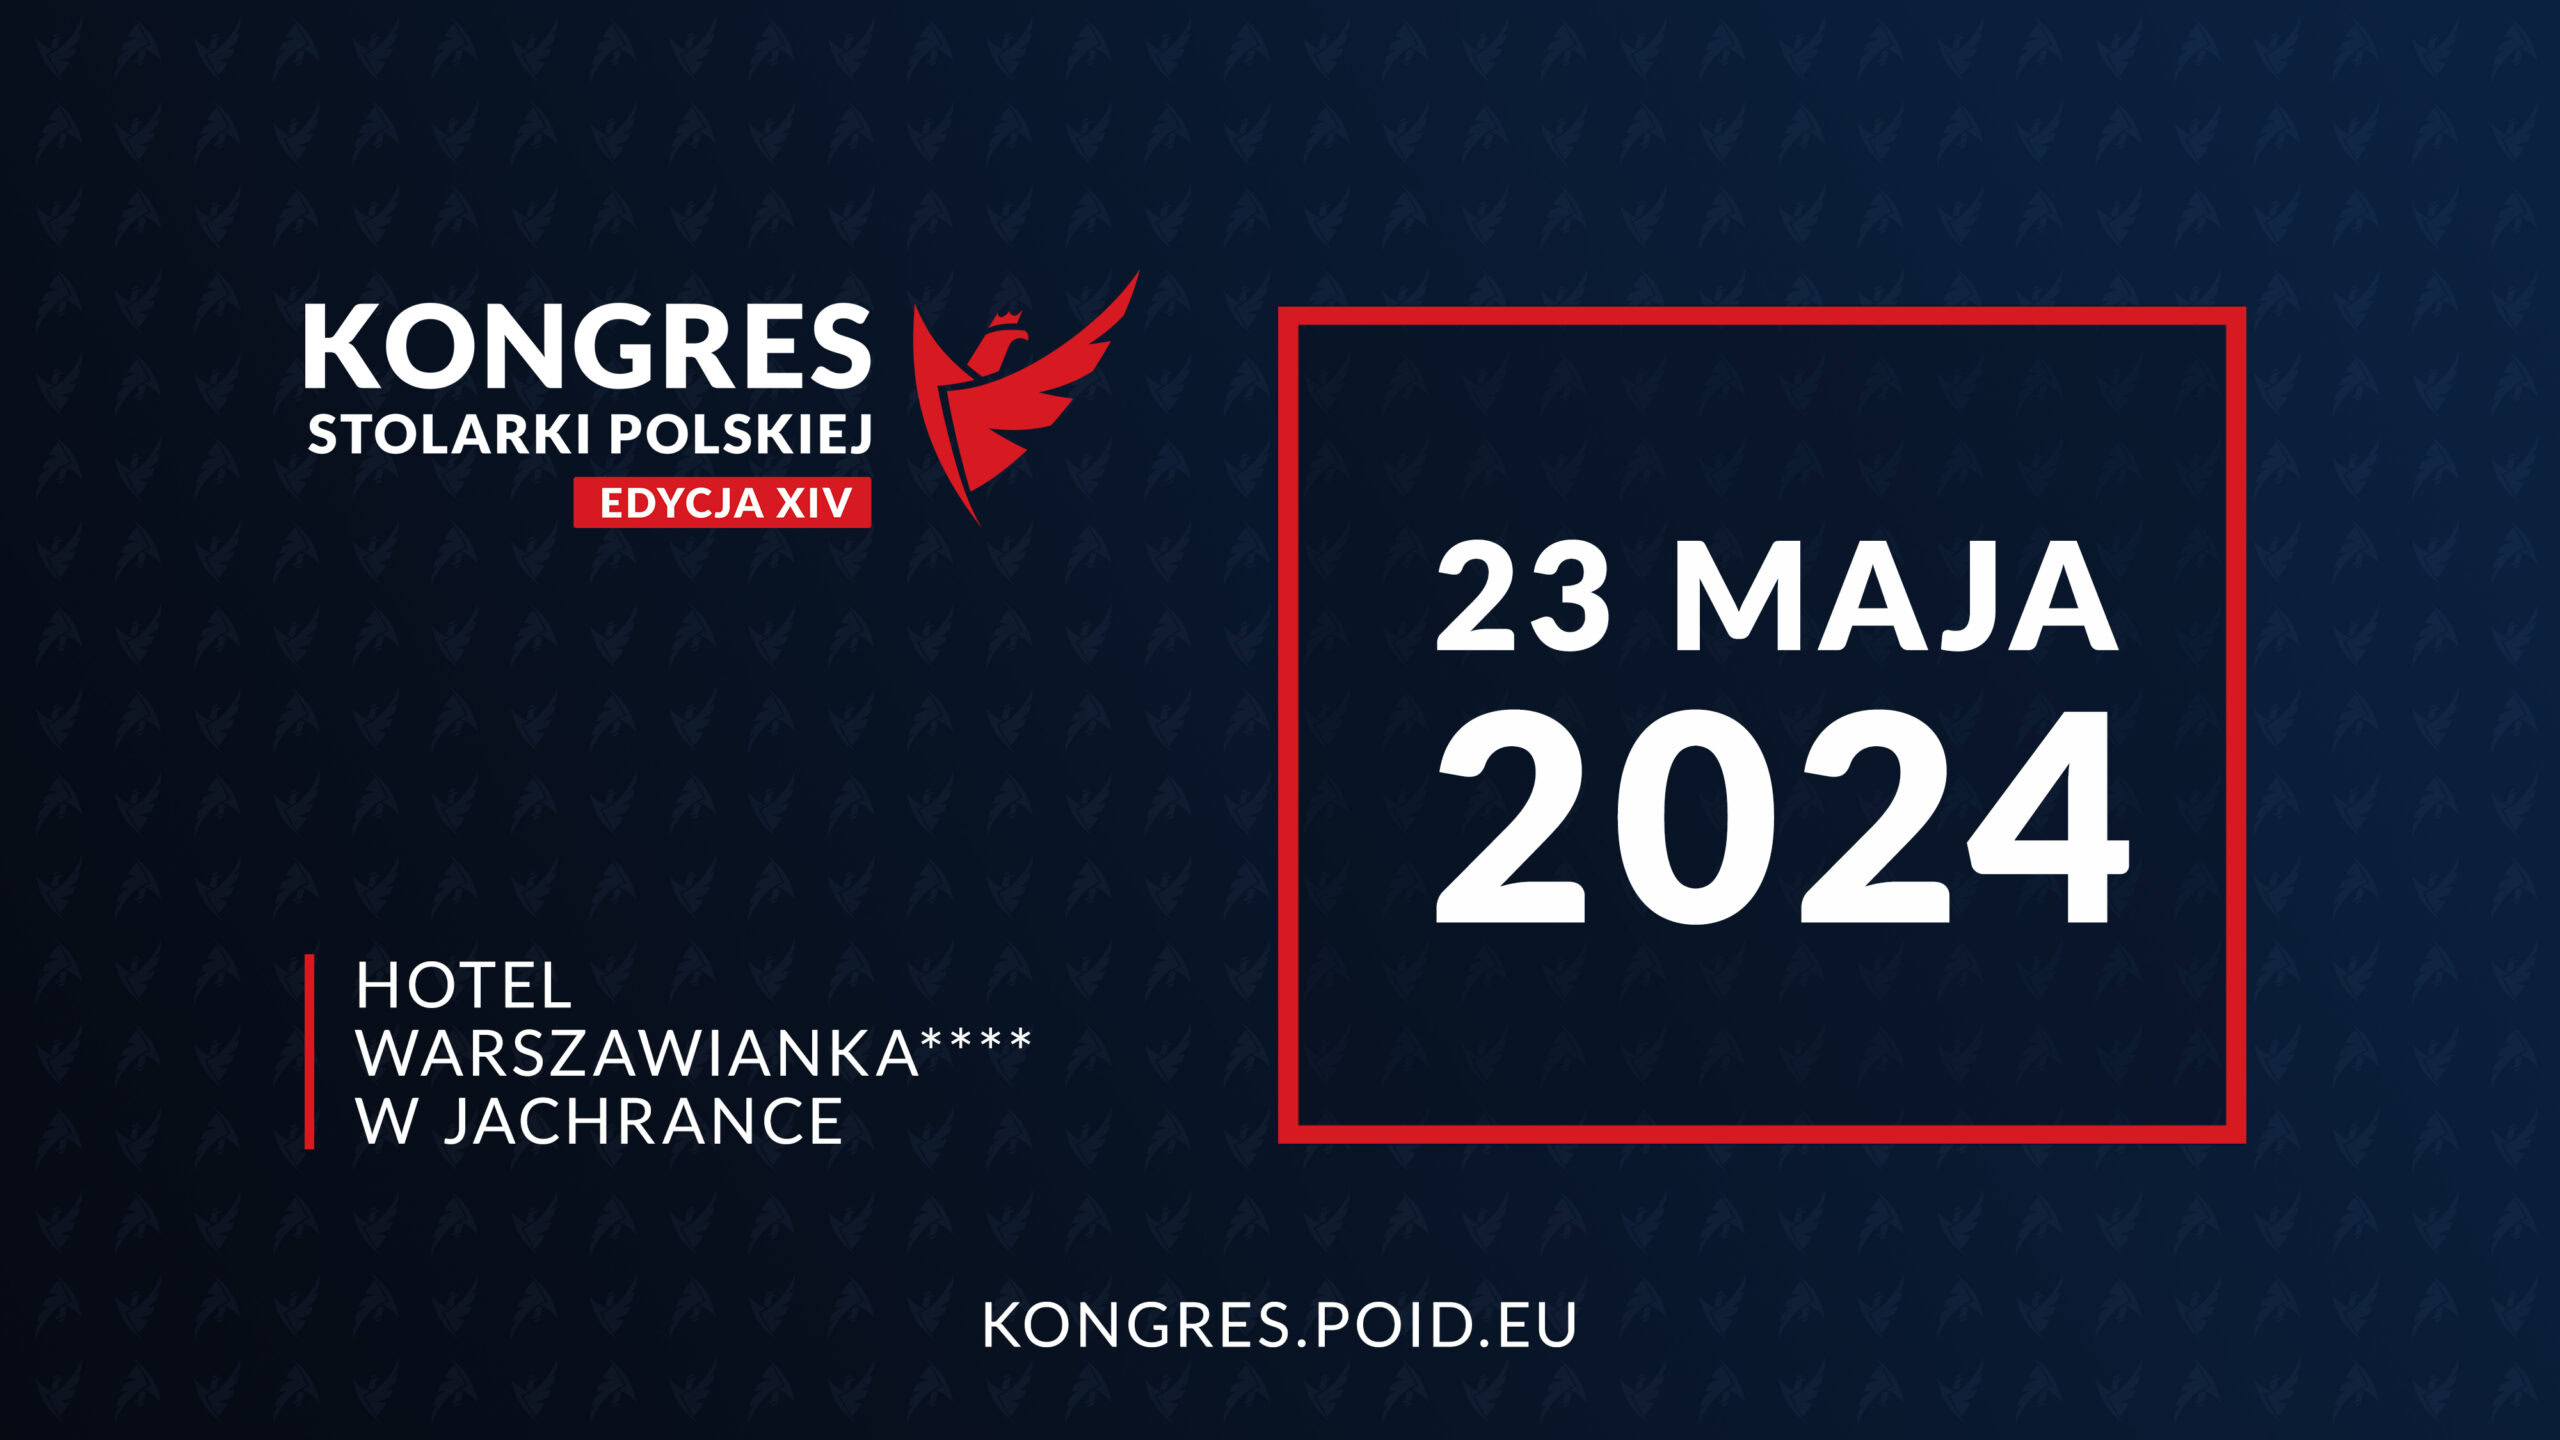 XIV-Kongres-Stolarki-Polskiej-POiD-Orly-Polskiej-Stolarki-scaled.jpg